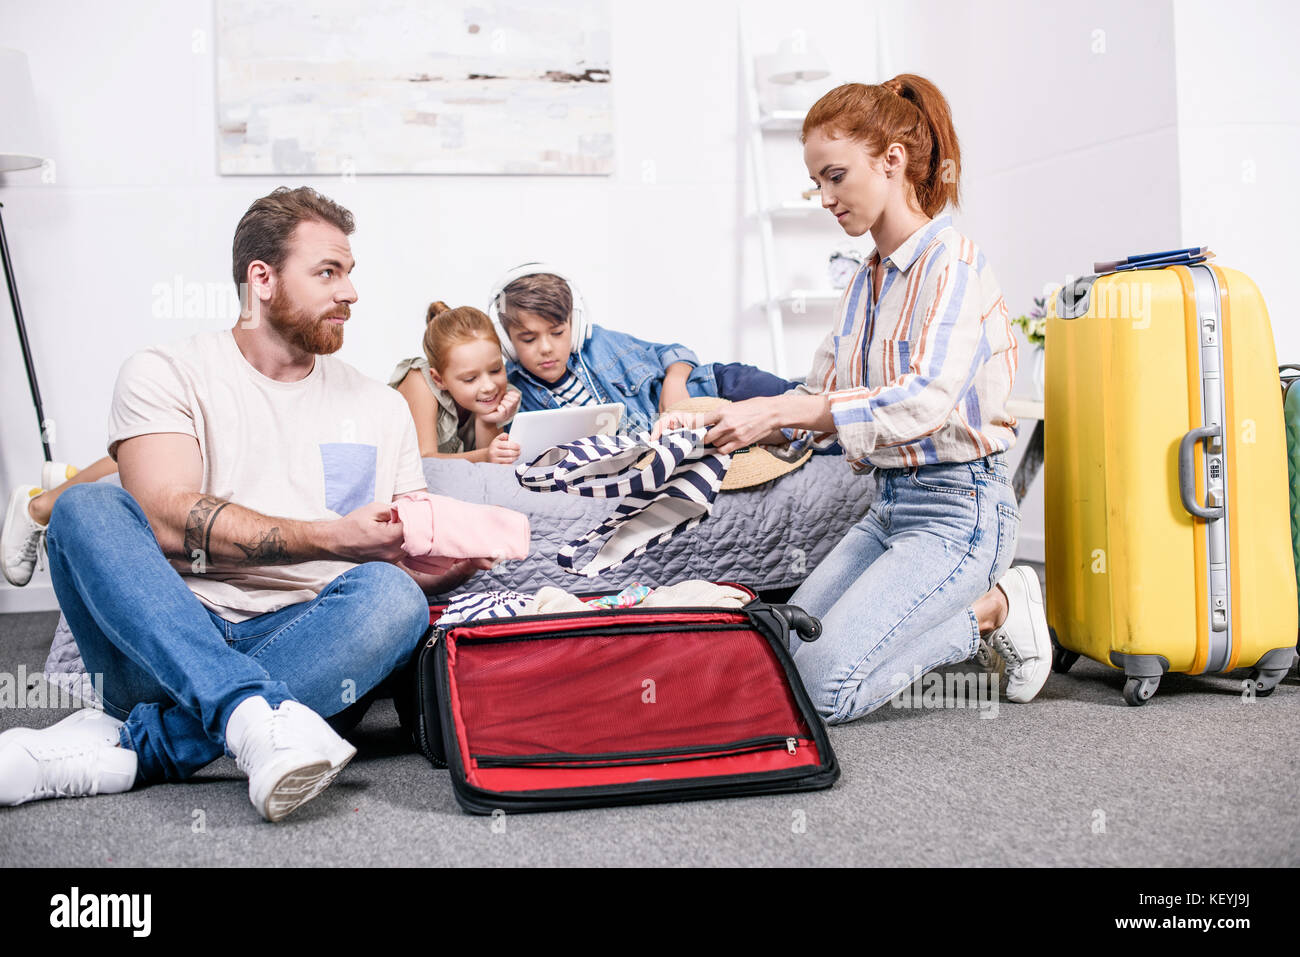 Костя вместе с семьей отправился в путешествие. Семья собирается в путешествие. Семья с чемоданами. Семья собирает чемоданы. Путешествие с семьей.